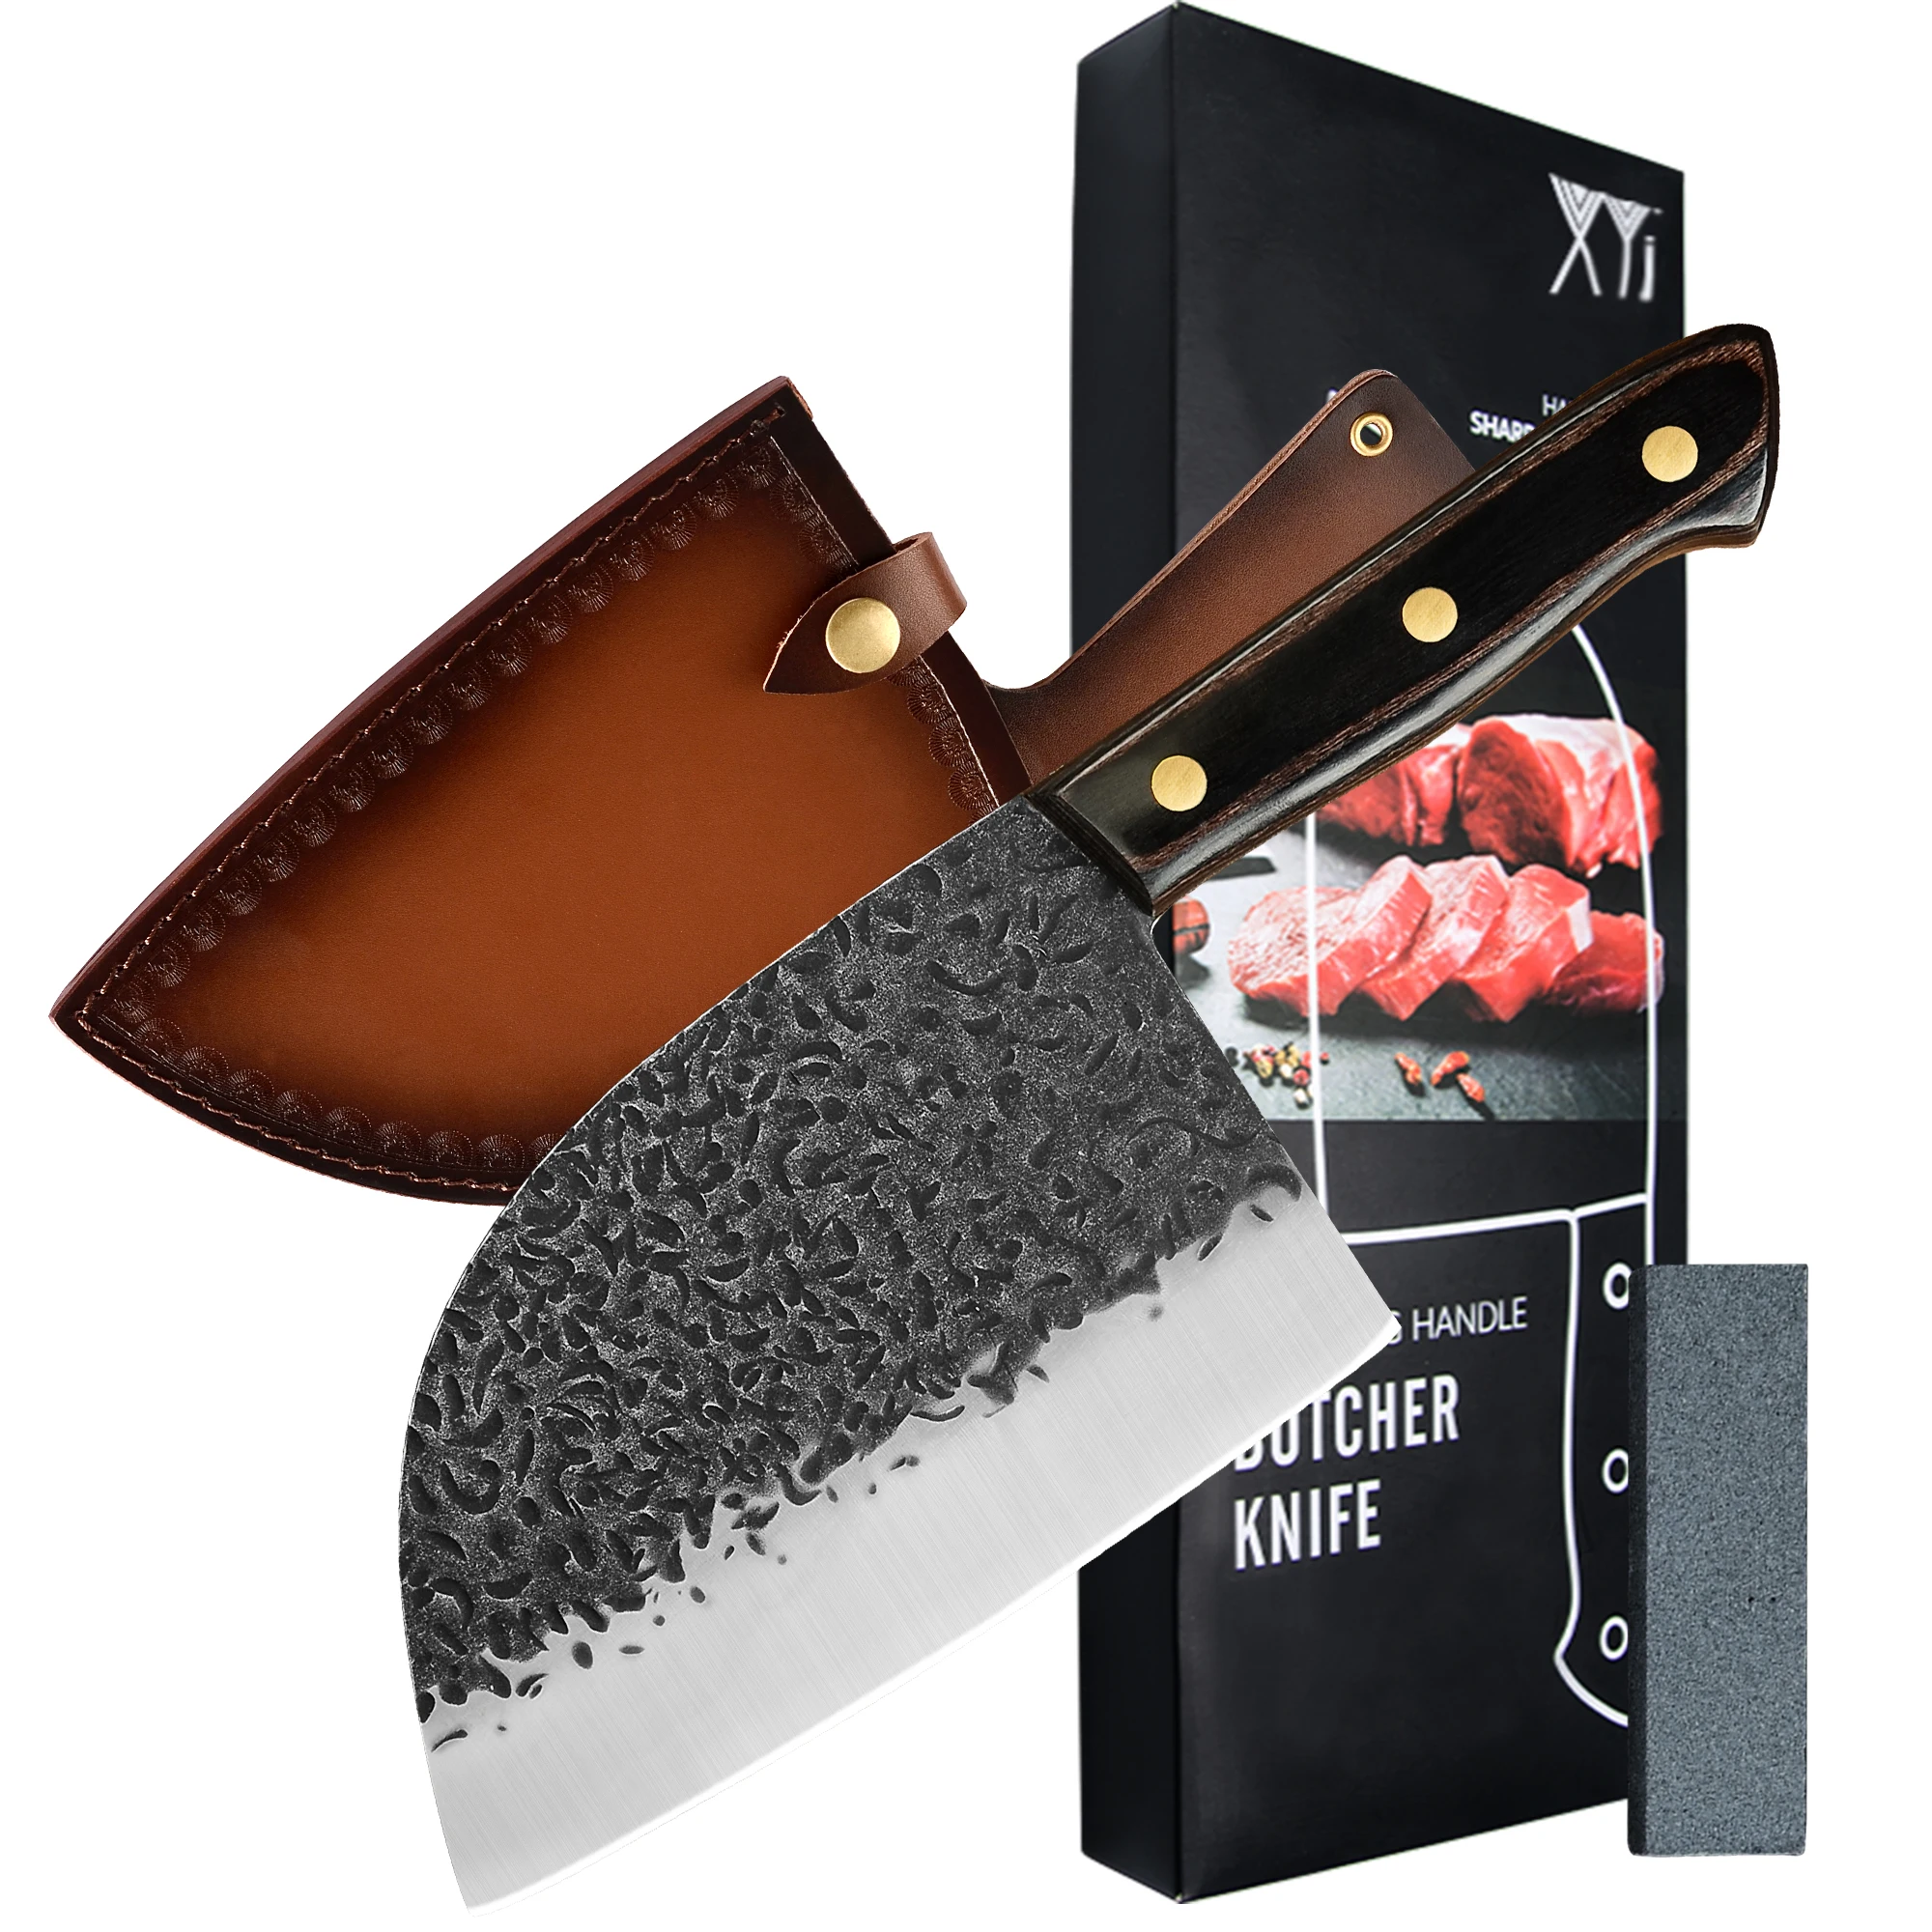 

XYj 7-дюймовый кухонный нож из нержавеющей стали, кованый нож для мясника, Мясницкий молоток, лезвие, слайсер, поварской нож с пластиковой Кобурой